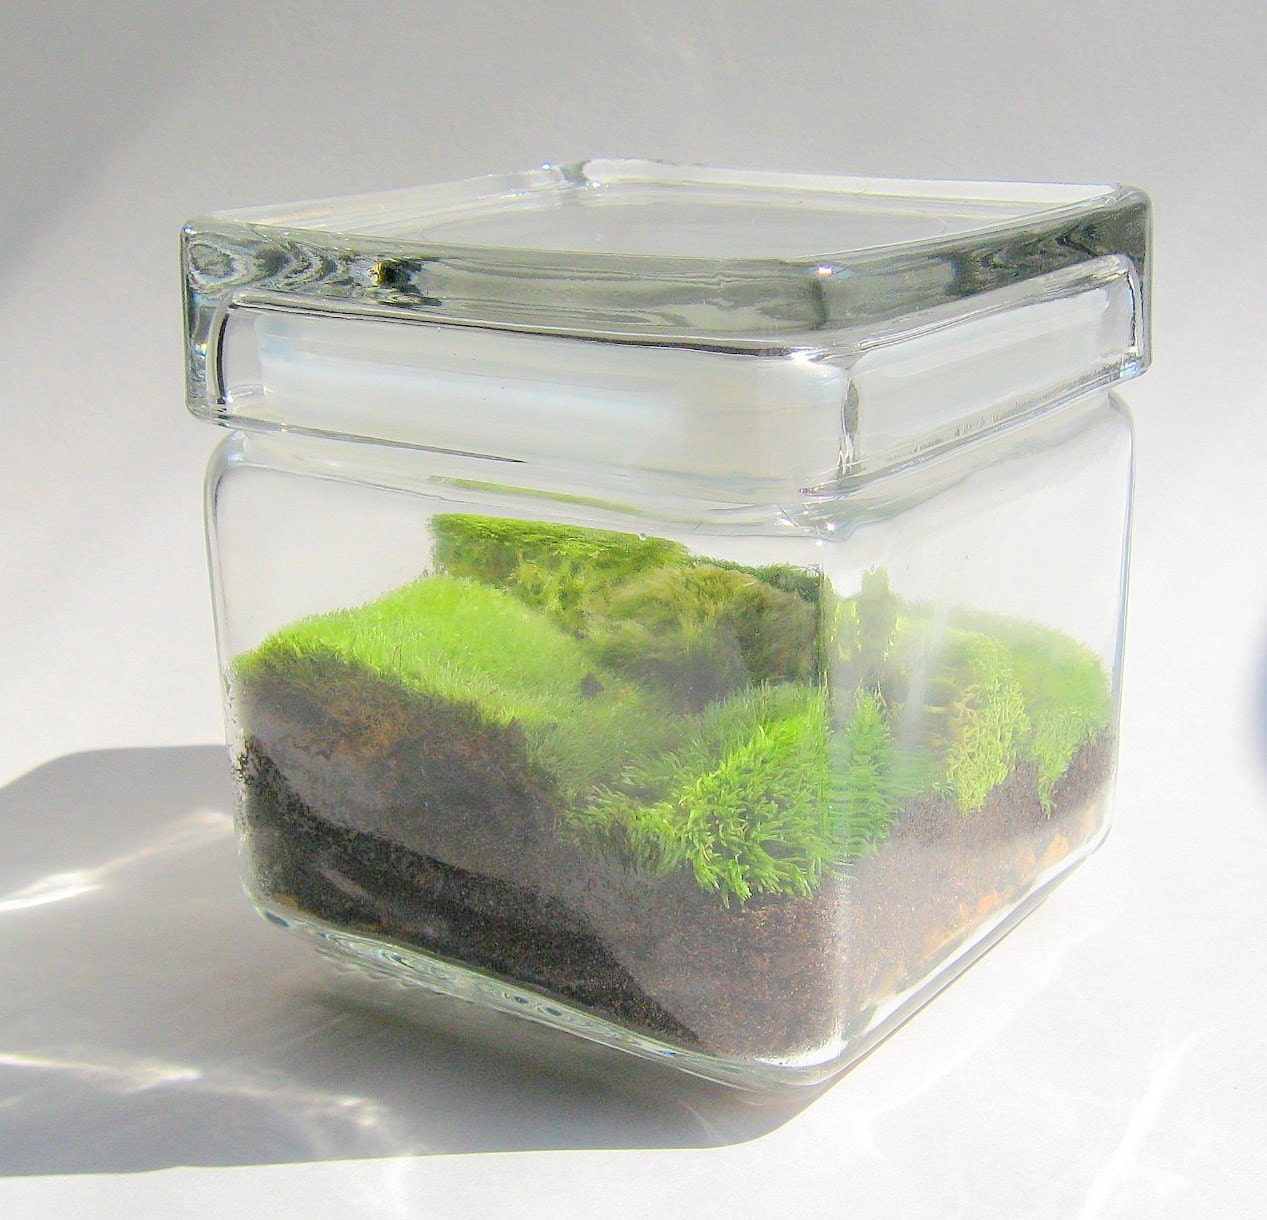 Mini Moss Terrarium (Galatea)